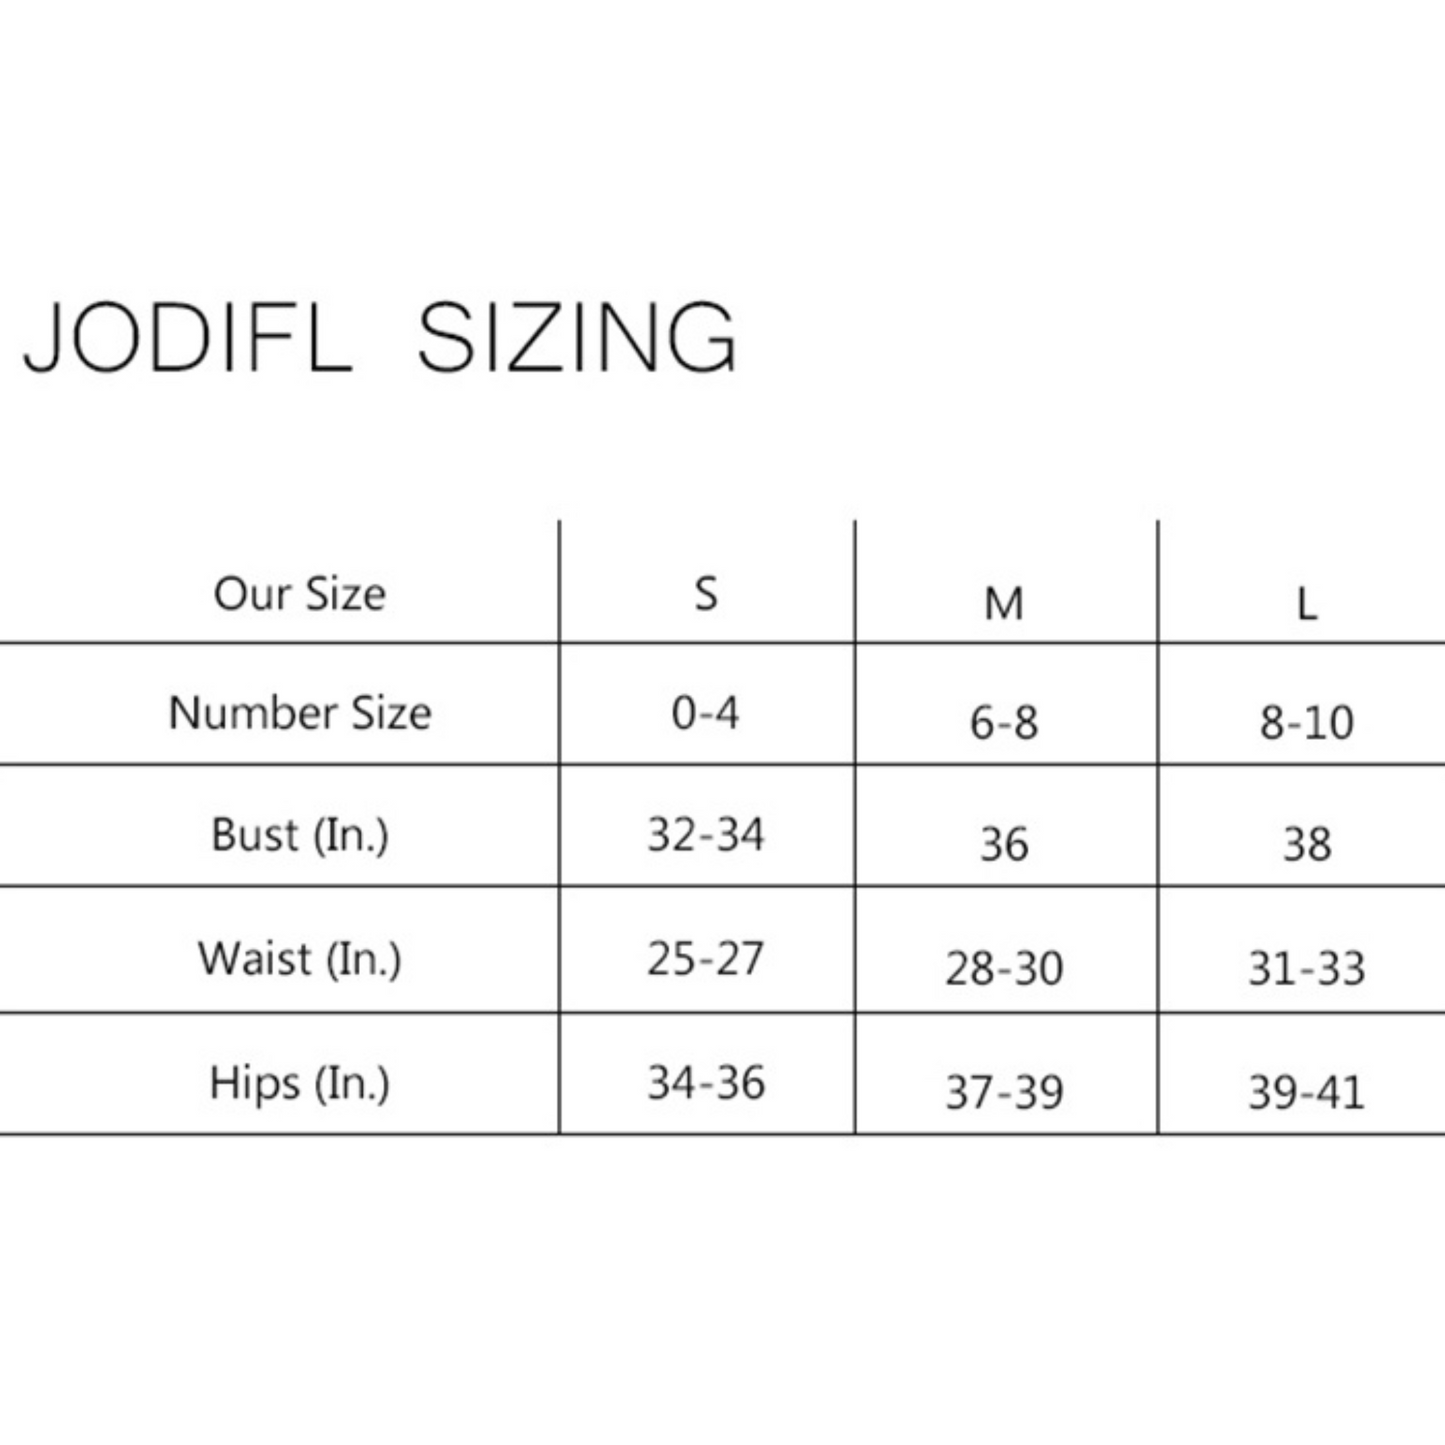 Jodifl size chart